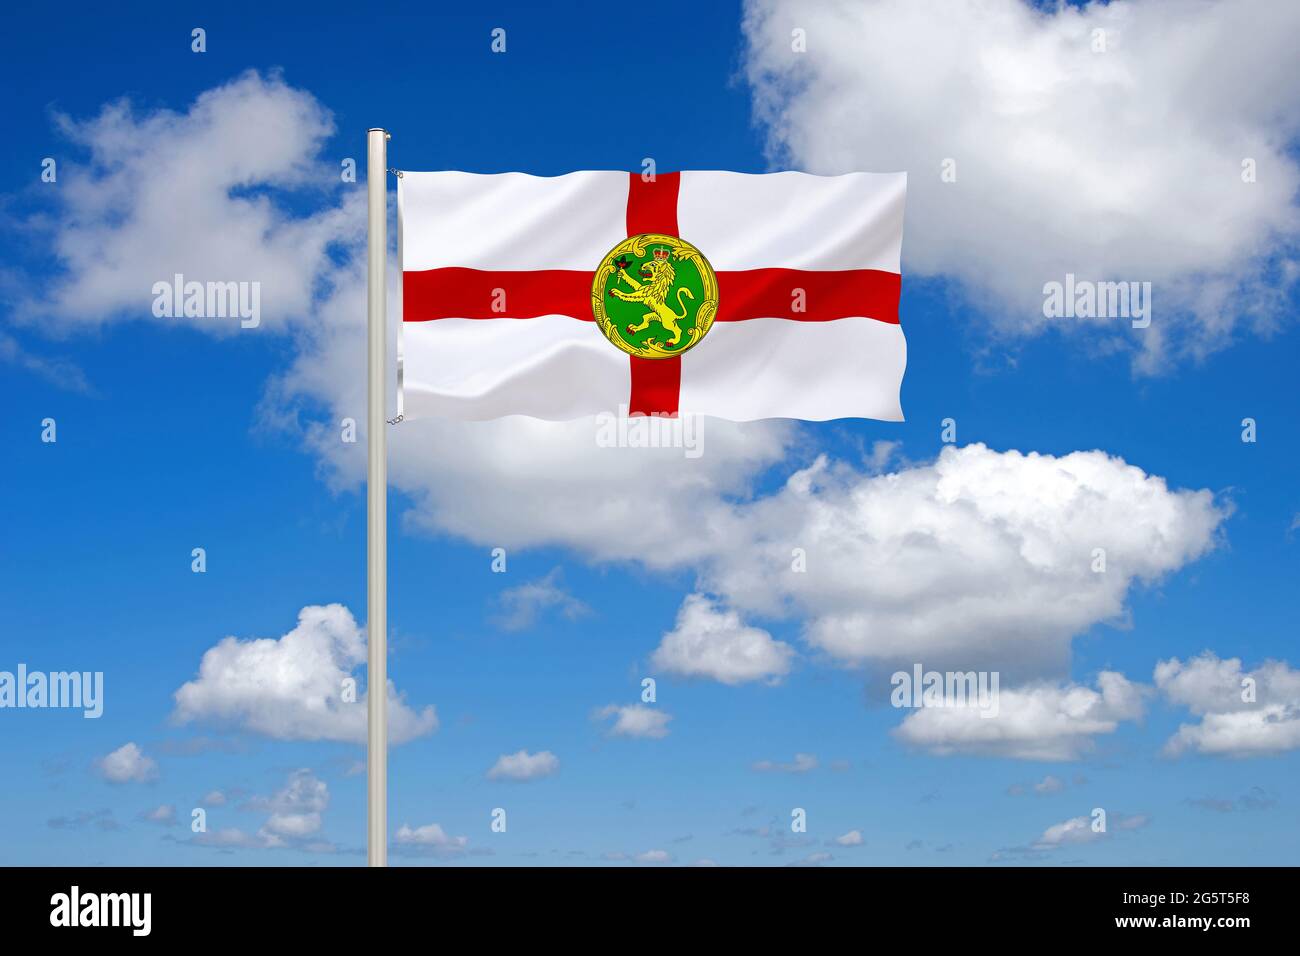 flag of Alderney, United Kingdom, Alderney Stock Photo